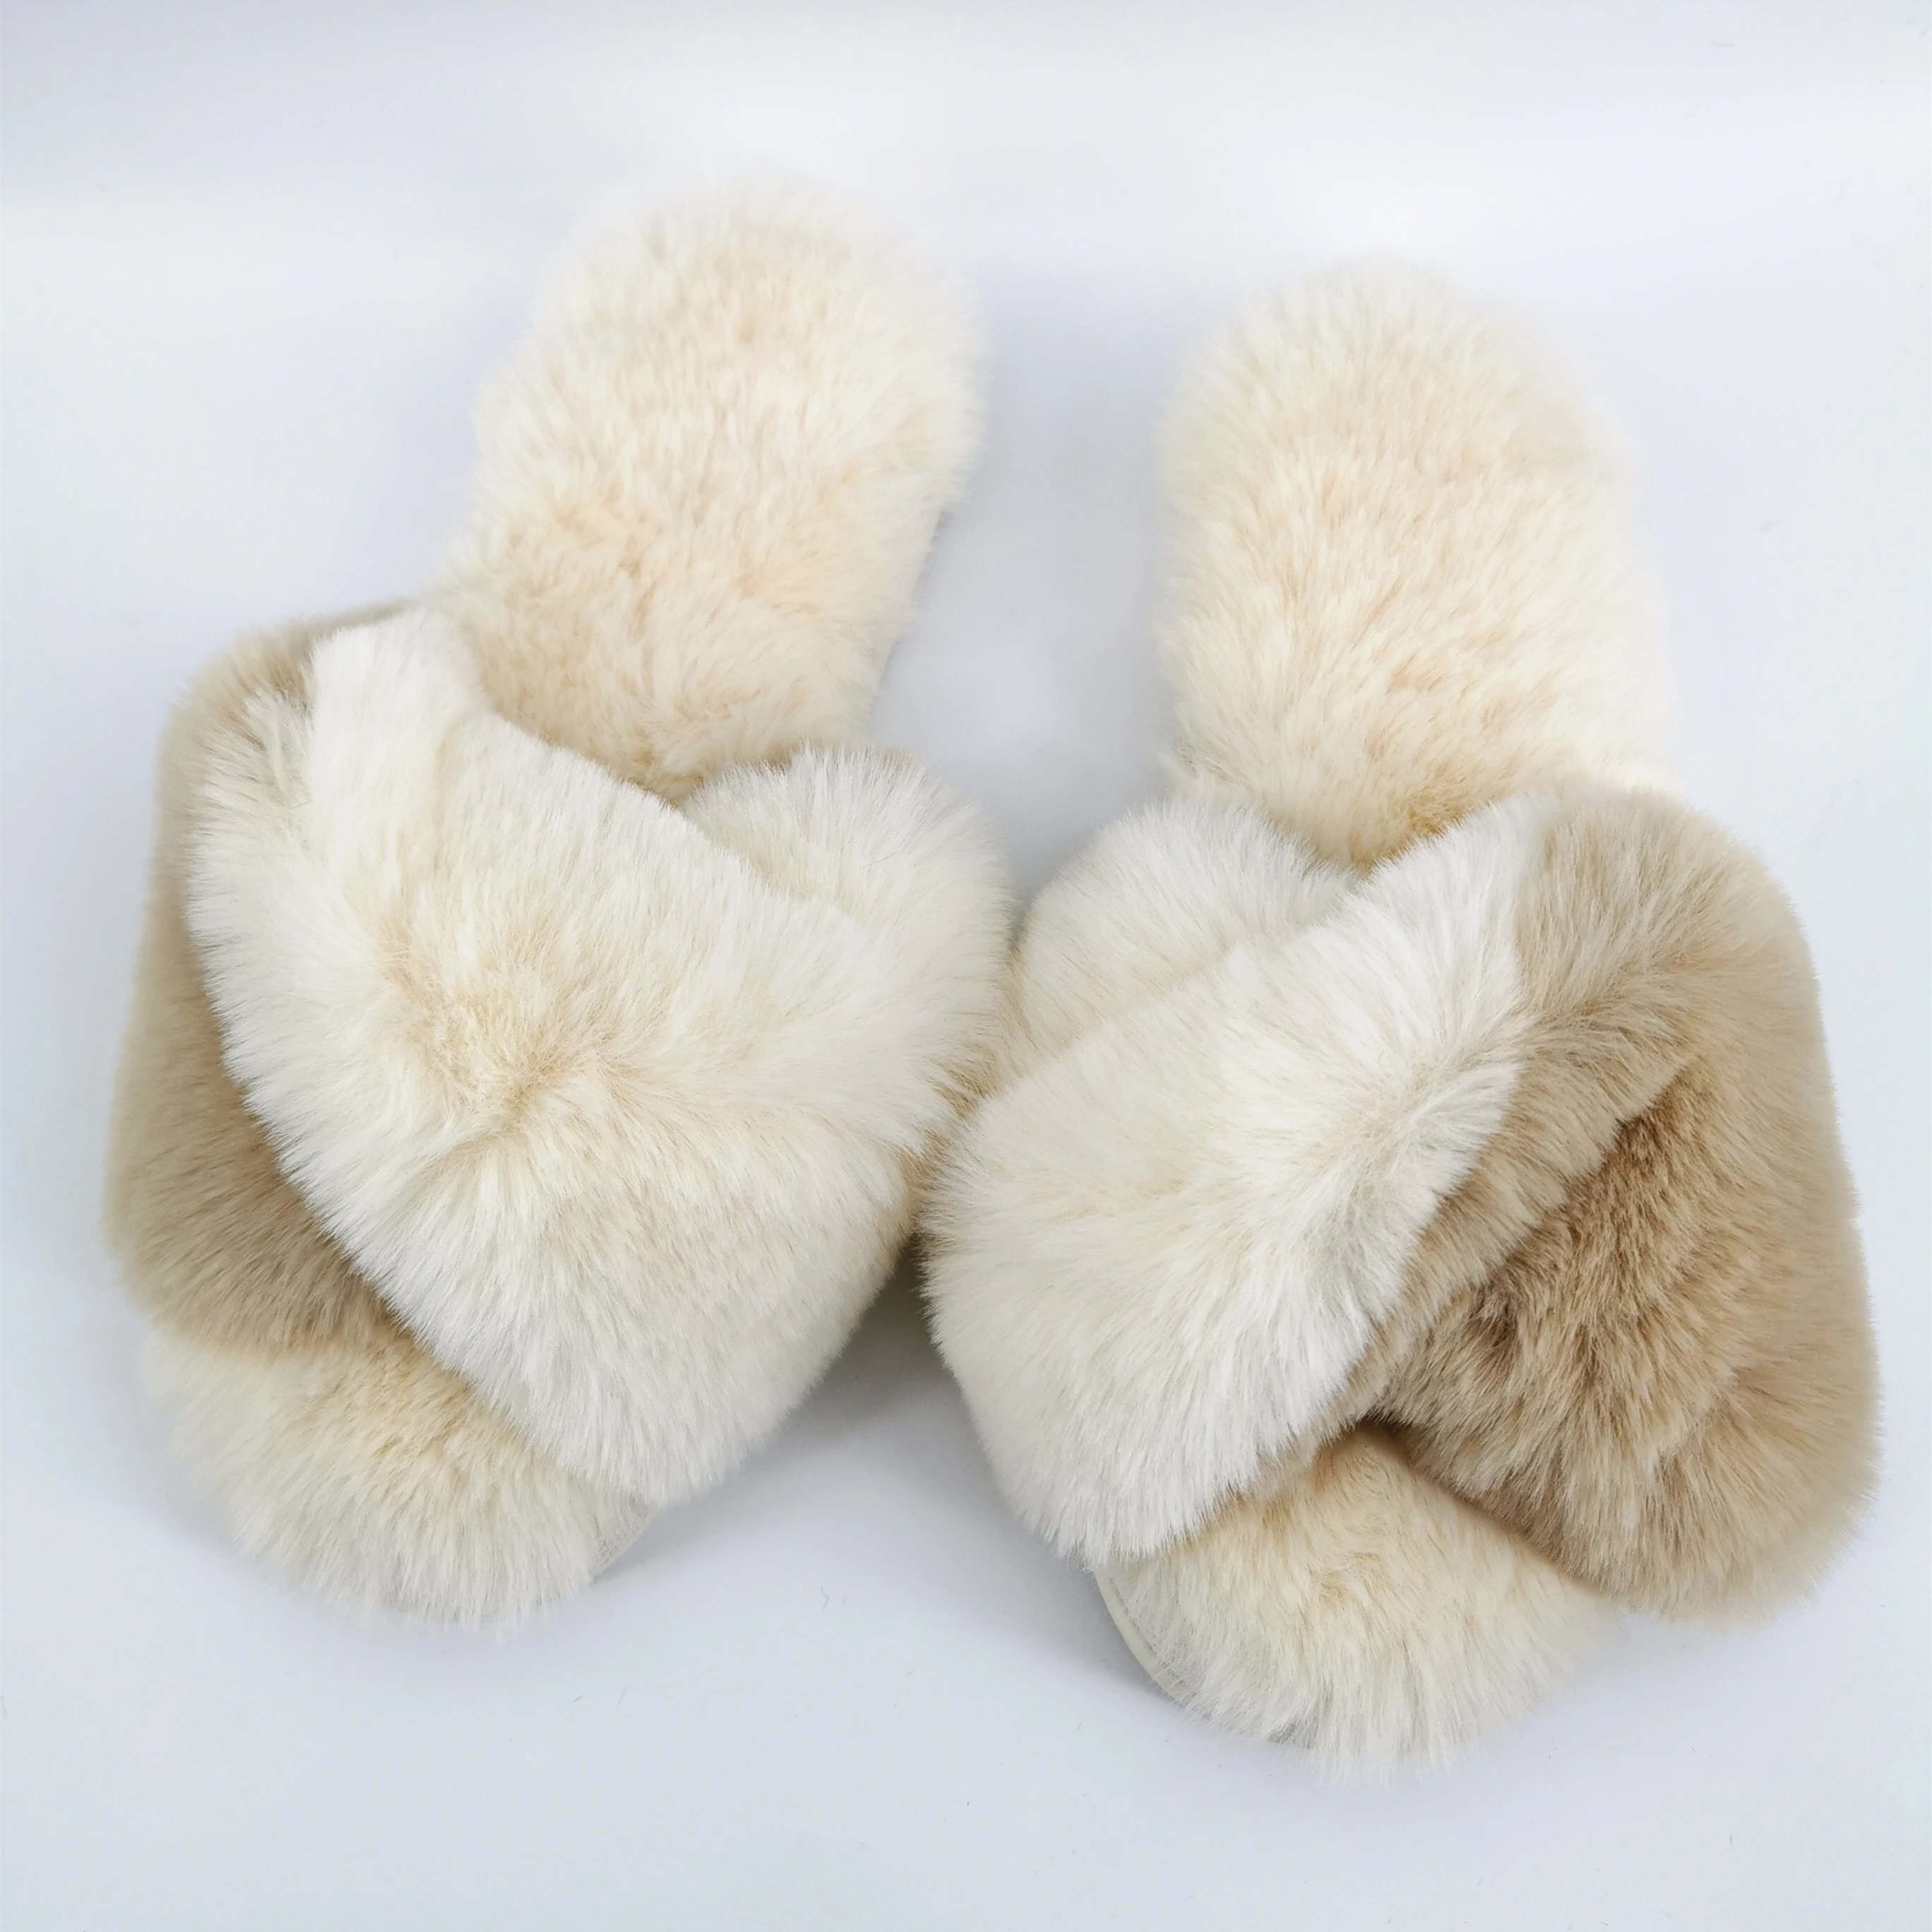 2020/21 warm winter beautiful multi color women faux fur slippers